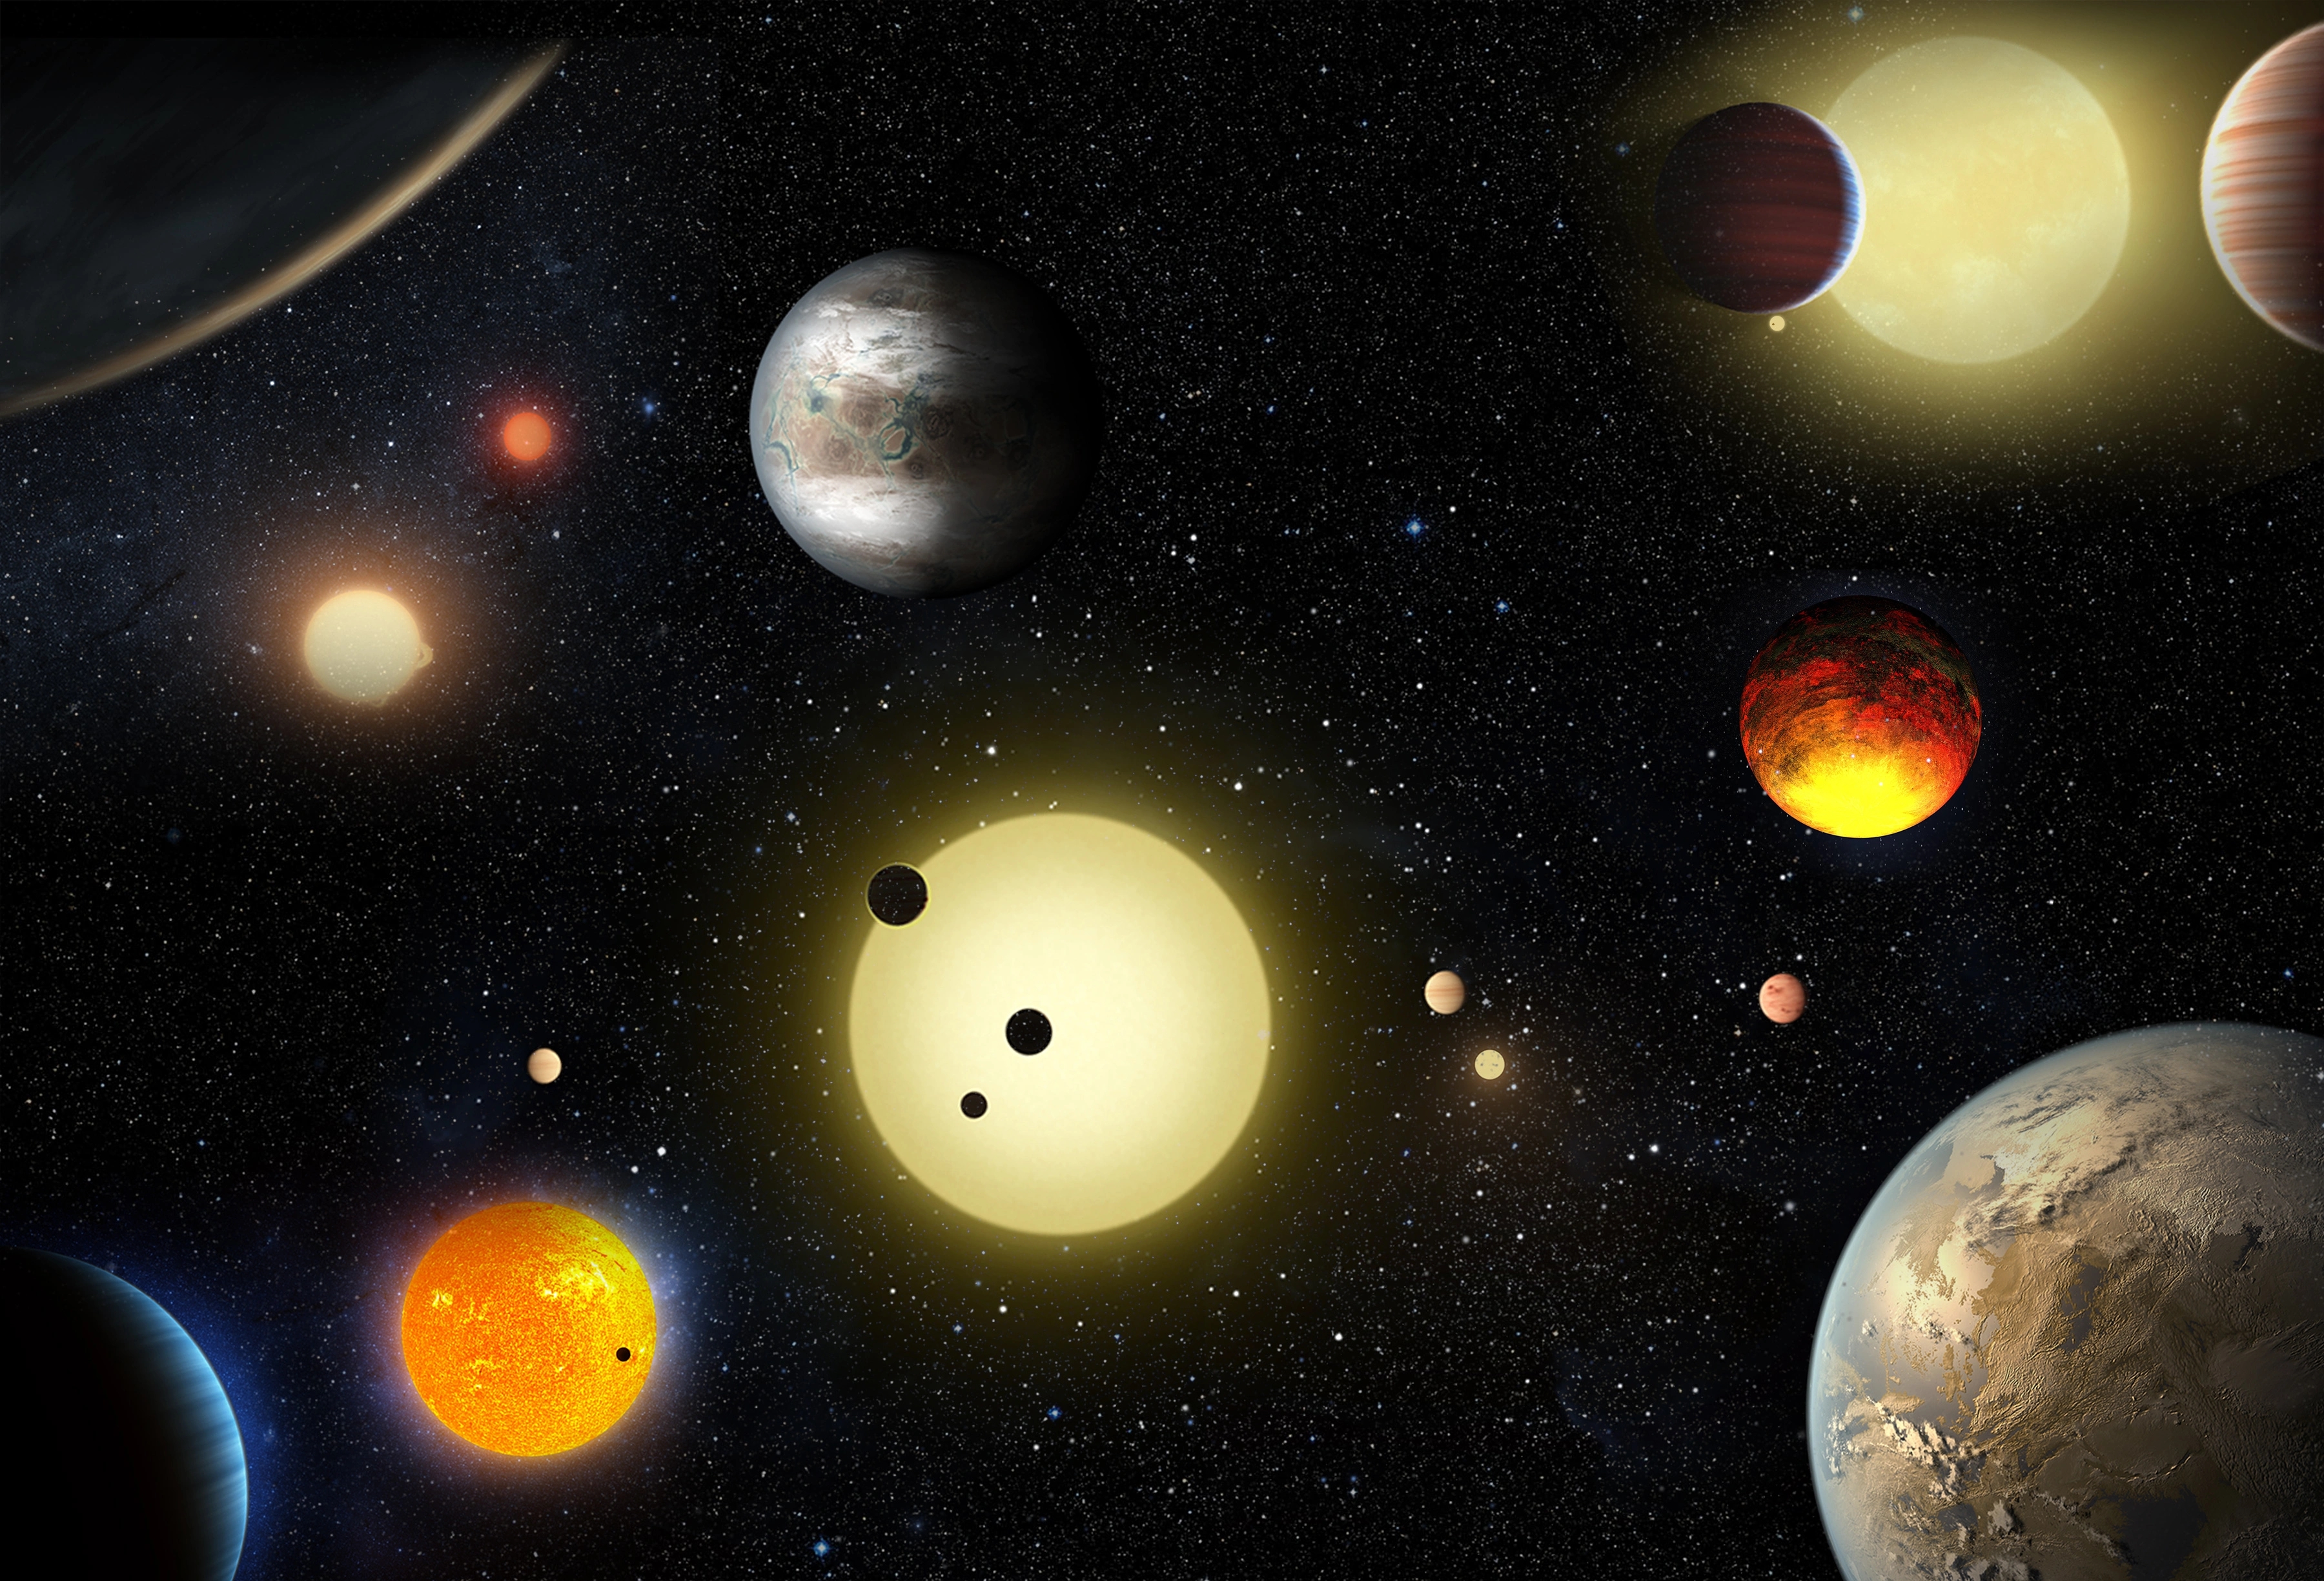 Planetary Science - NASA Science